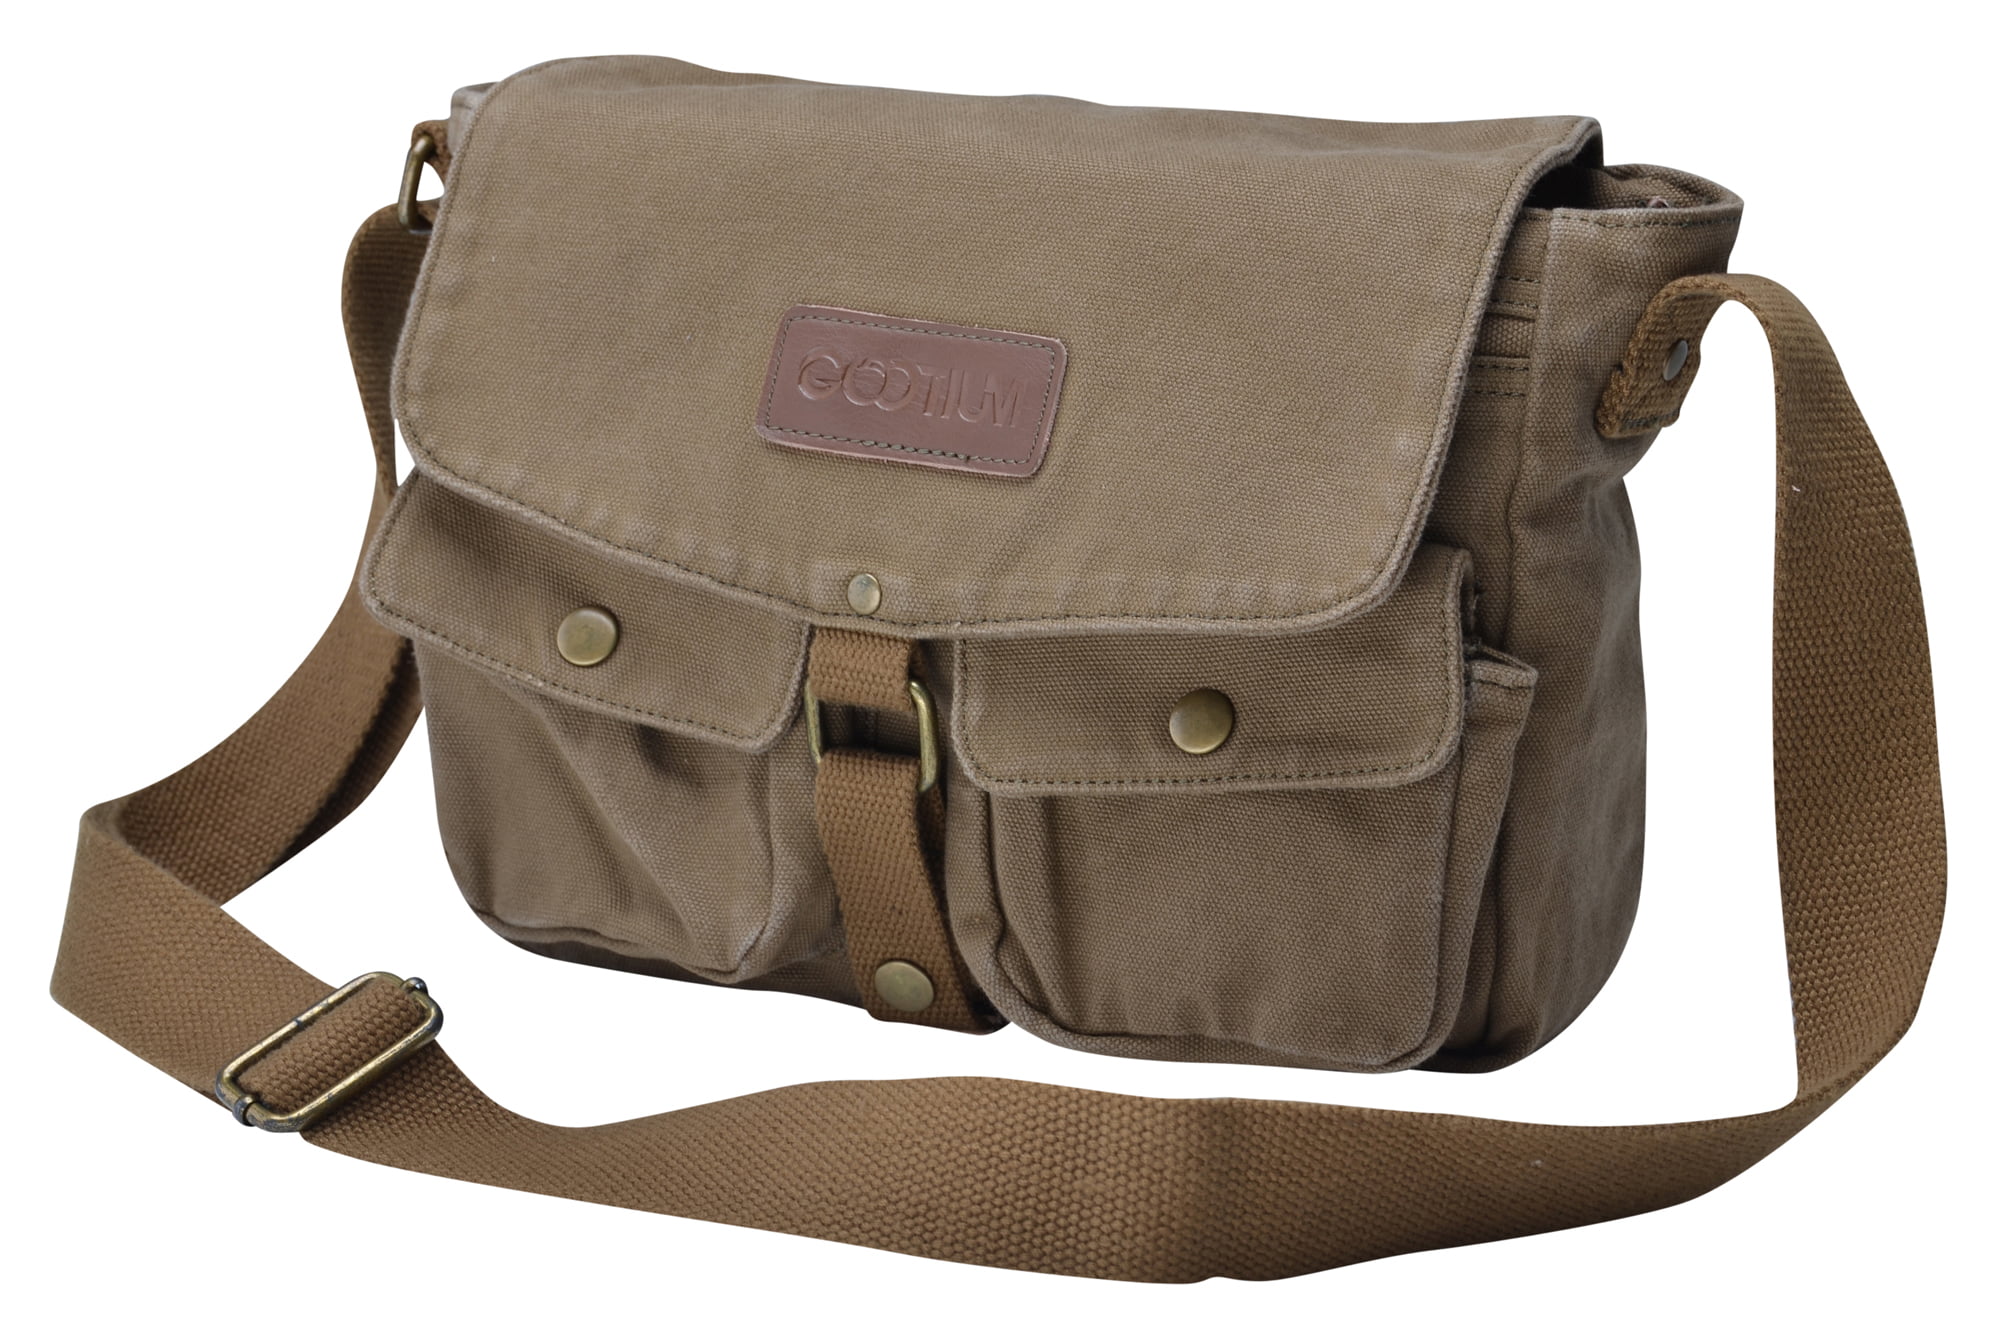 Kuston Vintage Canvas Messenger Bag Satchel Bag Shoulder Bag Crossbody for Women Men